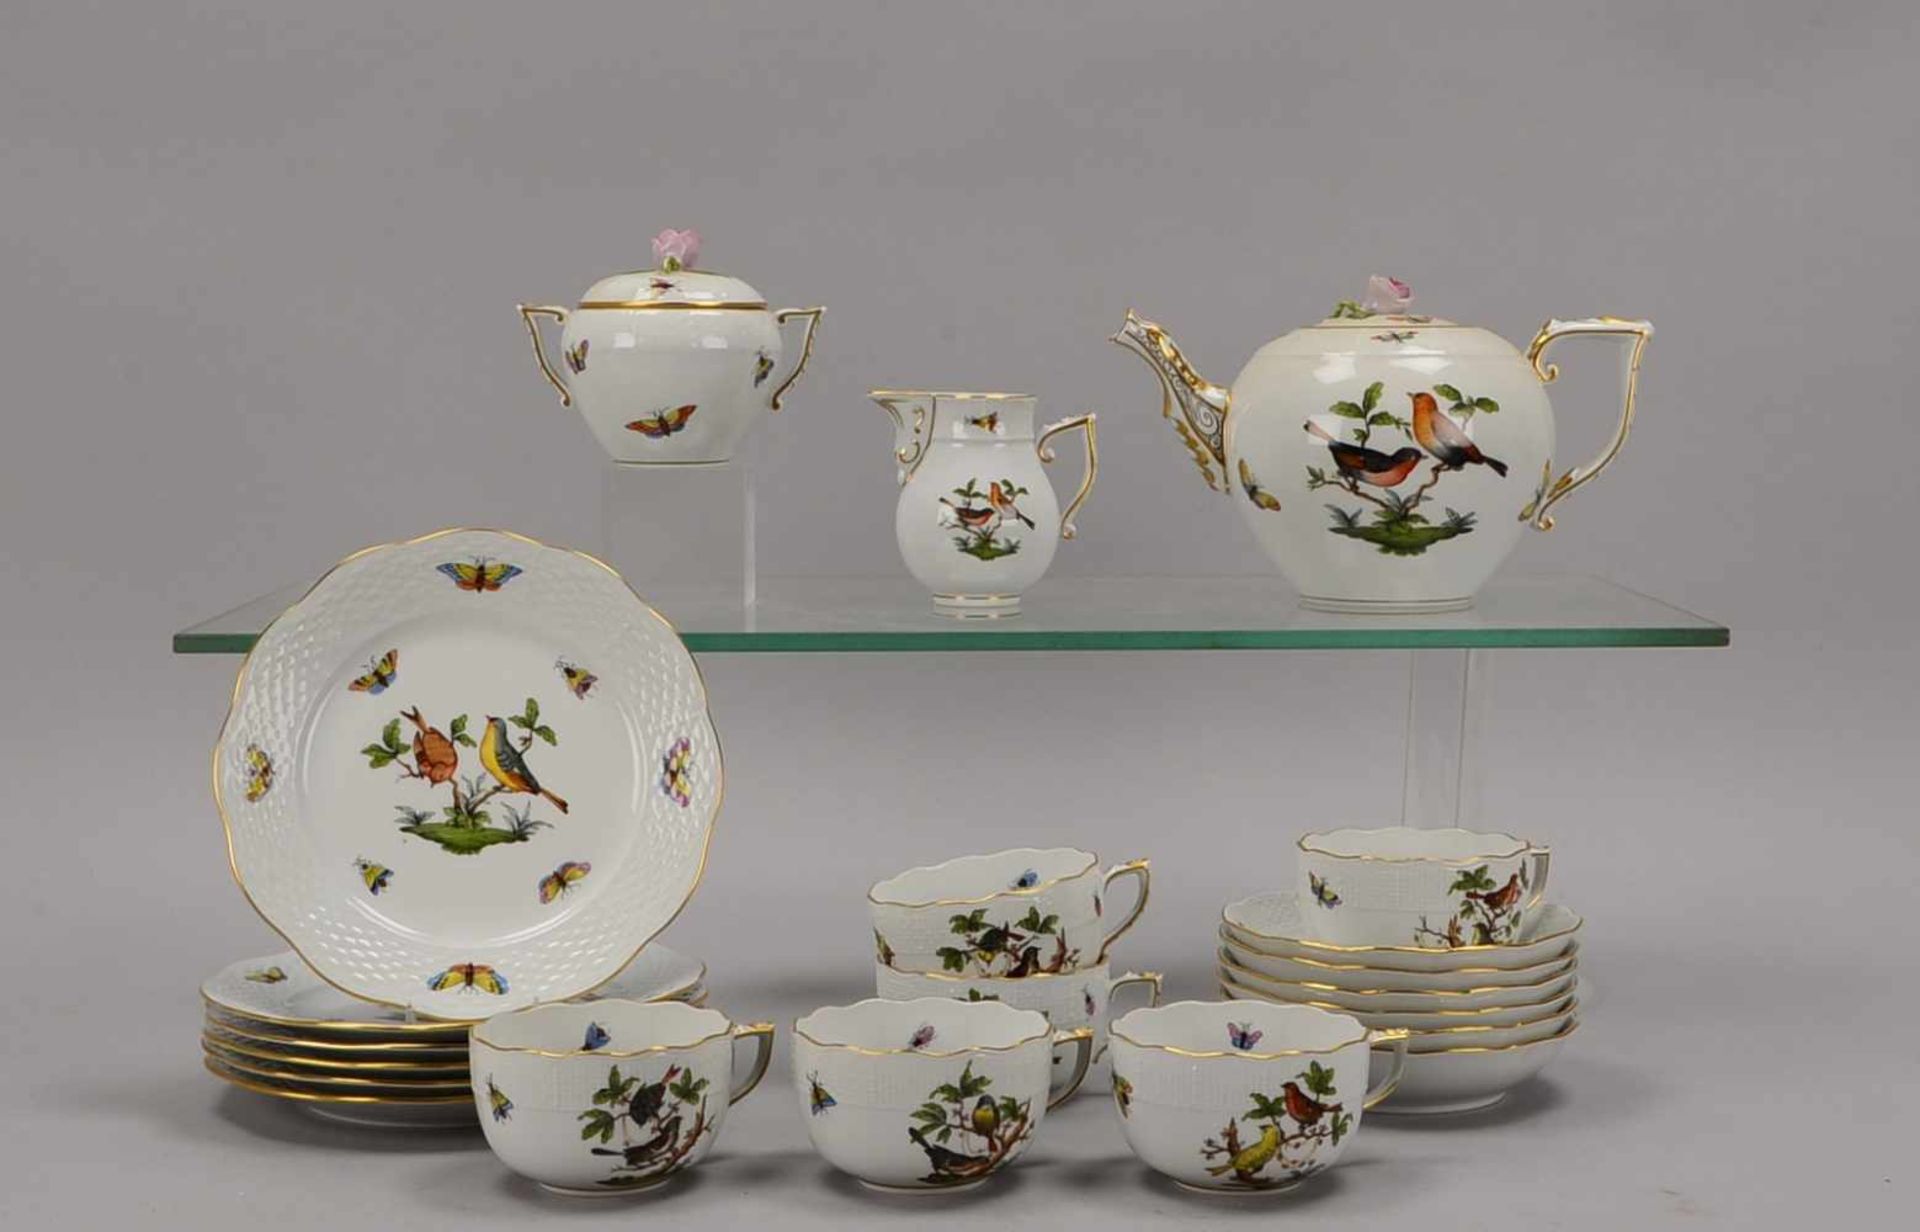 Herend, Teeservice, Dekor 'Rothschild', für 6 Personen, umfassend: Teekanne, Zucker und Sahne, 6x